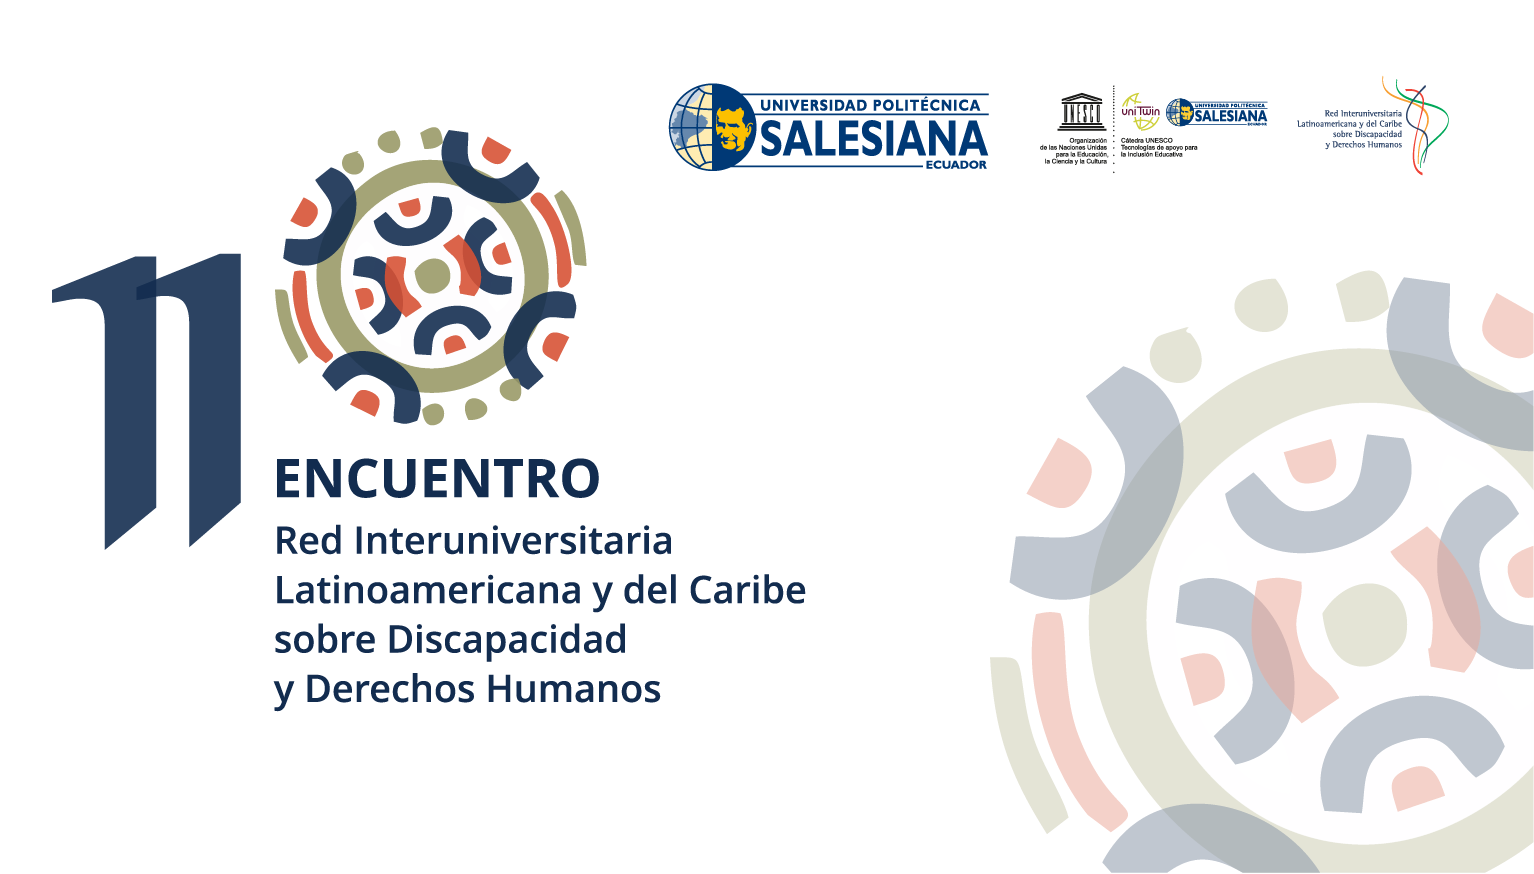 Banner onceavo encuentro Red Interuniversitaria Latinoamericana y del Caribe sobre Discapacidad y Derechos humanos